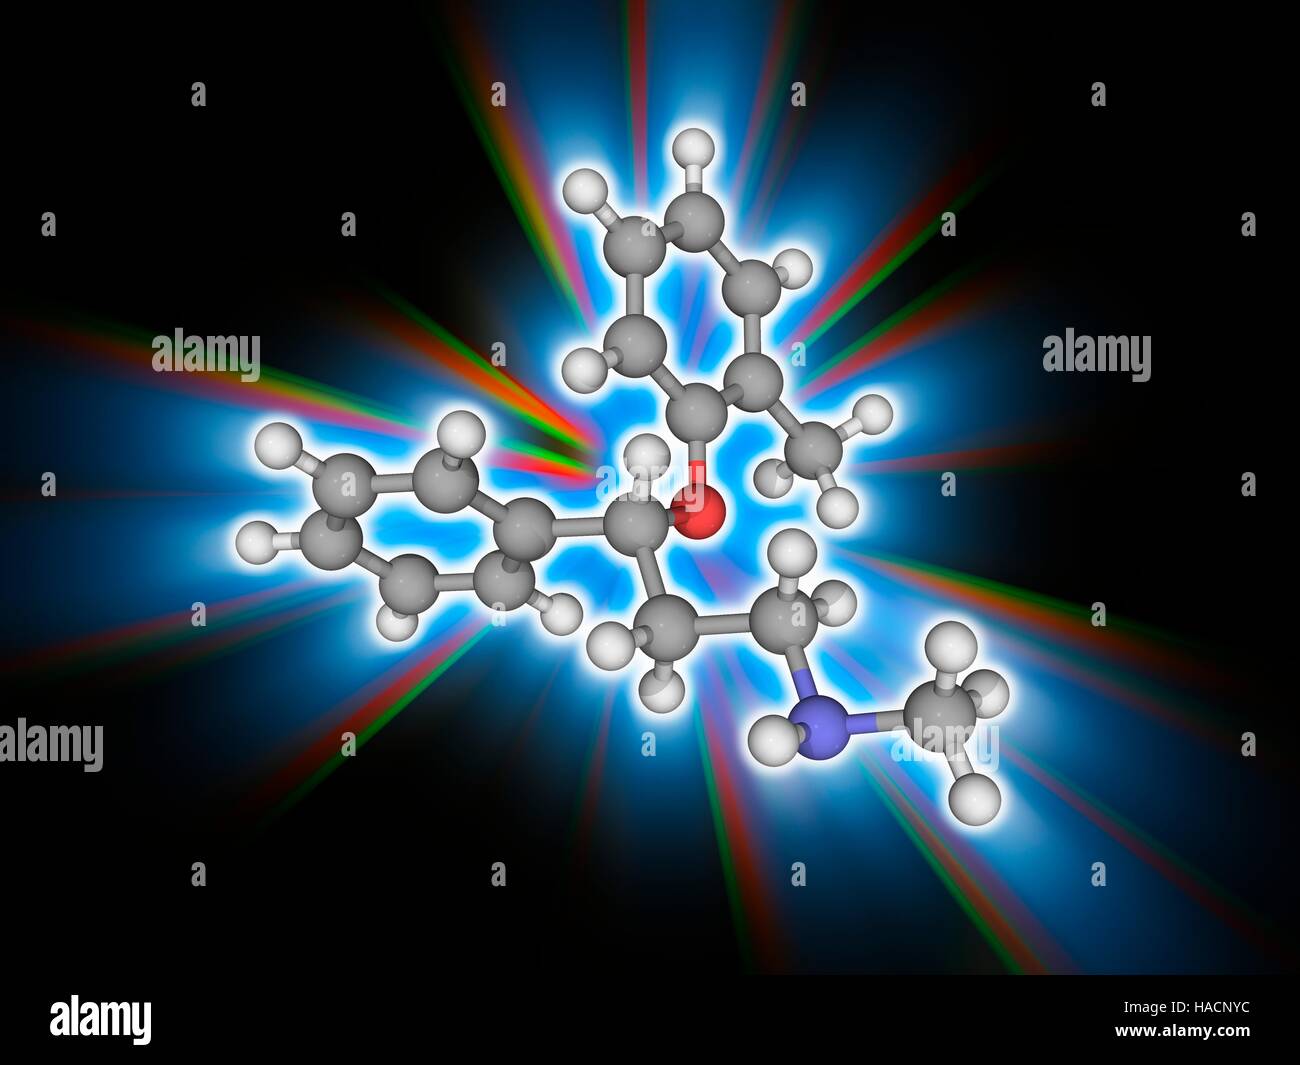 Atomoxetin. Molekulares Modell des Medikament Atomoxetine (C17. H21. NAVI). Dieses Medikament dient der Behandlung von Aufmerksamkeits-Defizit-Hyperaktivitäts-Störung (ADHS). Atome als Kugeln dargestellt werden und sind farblich gekennzeichnet: Kohlenstoff (grau), Wasserstoff (weiß), Stickstoff (blau) und Sauerstoff (rot). Abbildung. Stockfoto